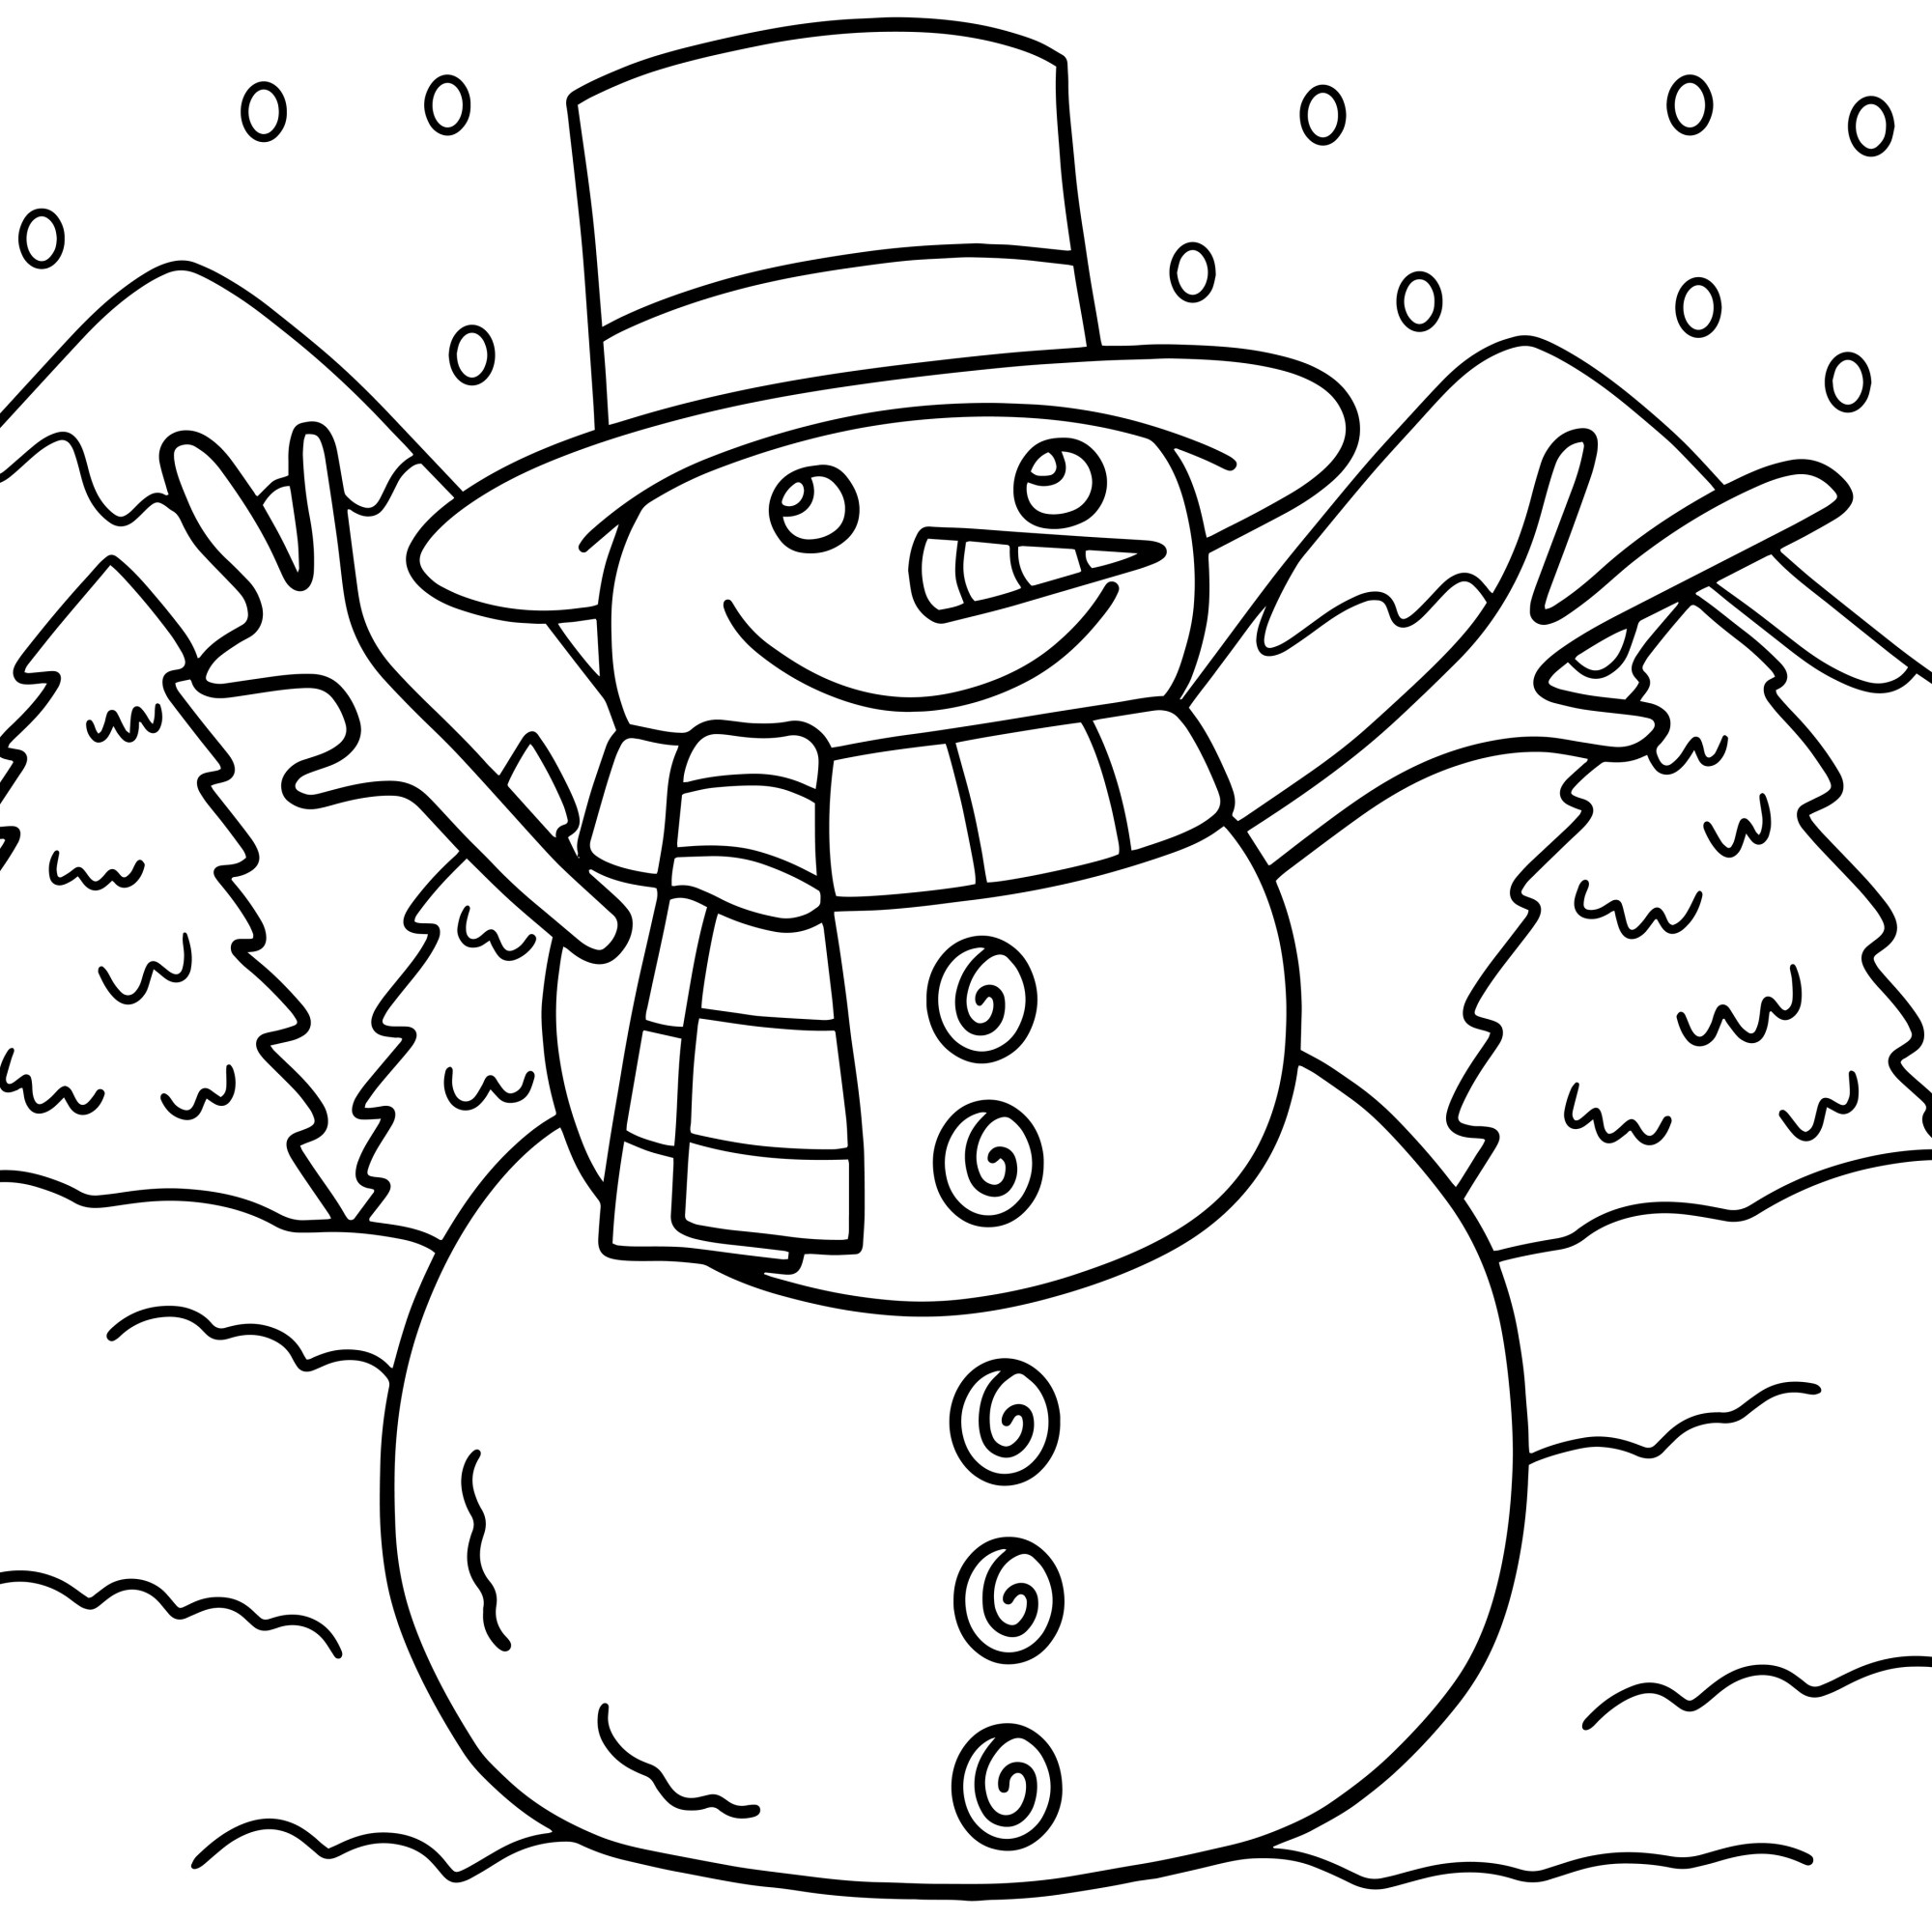 Раскраска для детей: снеговик в шляпе и шарфе на фоне снежного леса